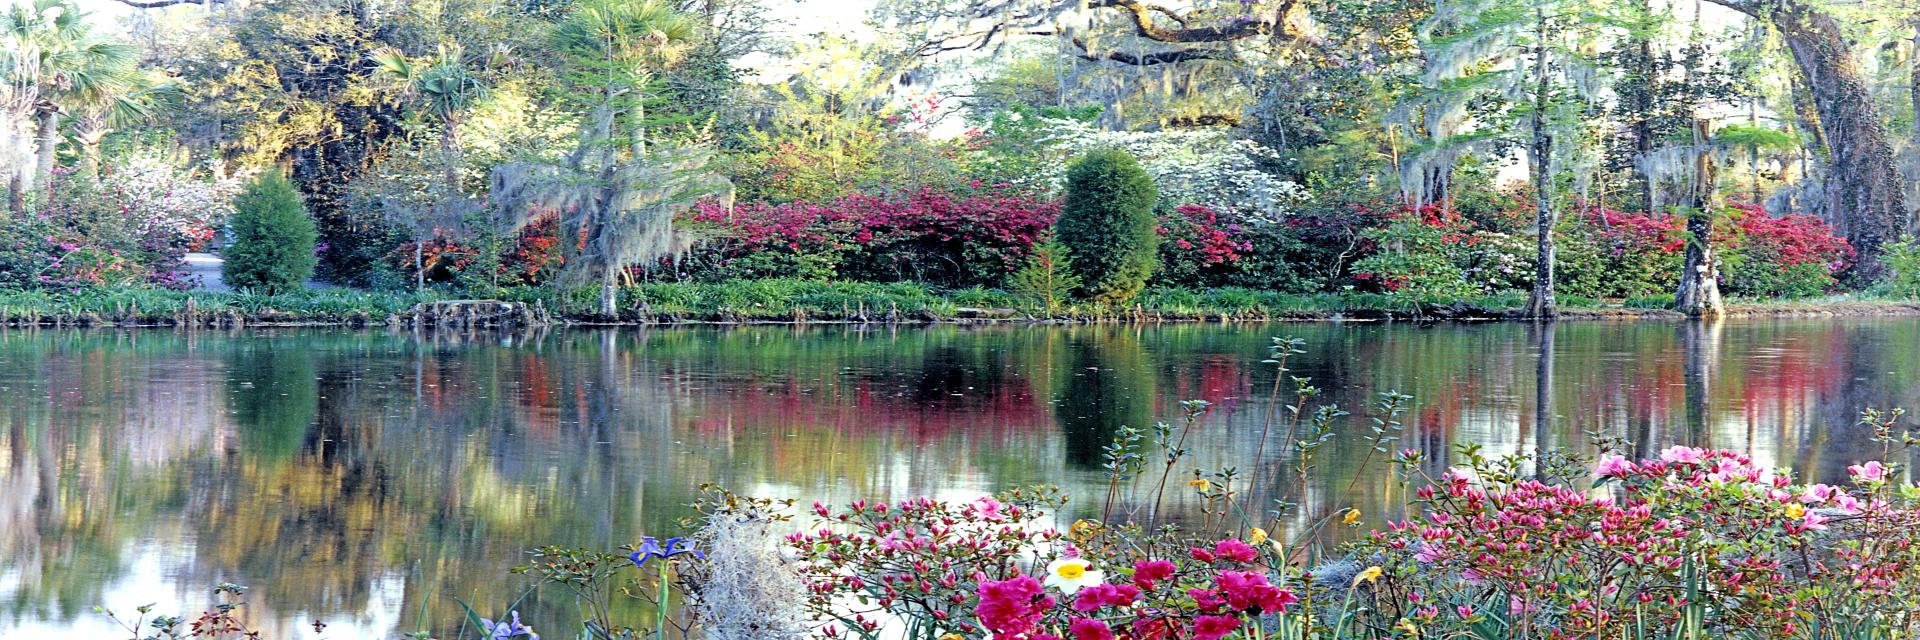 00760p gardens, flowers, azeala, lake, spanish moss,,.jpg